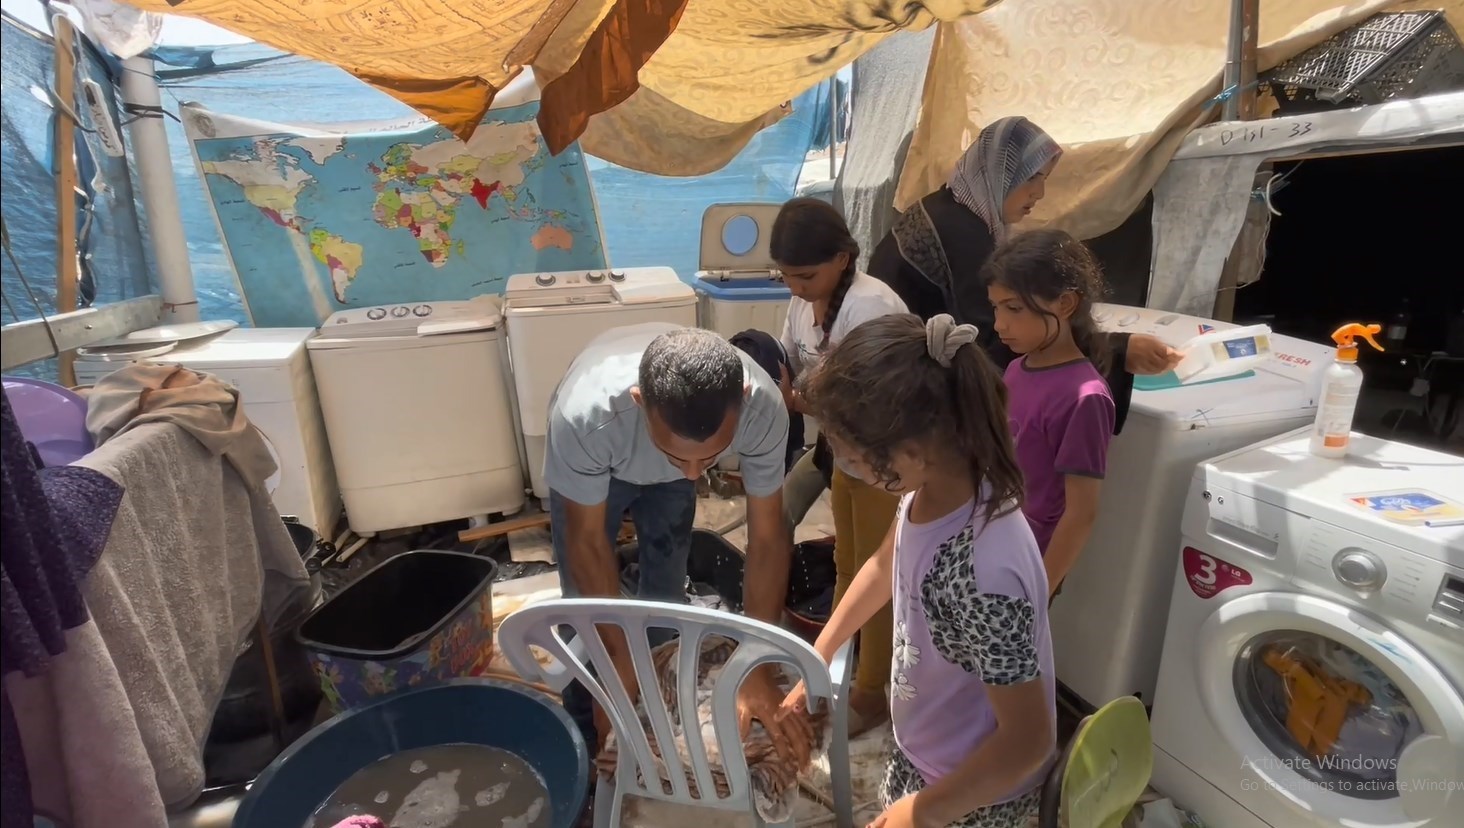 راه اندازی مرکز لباسشویی با برق خورشیدی توسط جوان فلسطینی